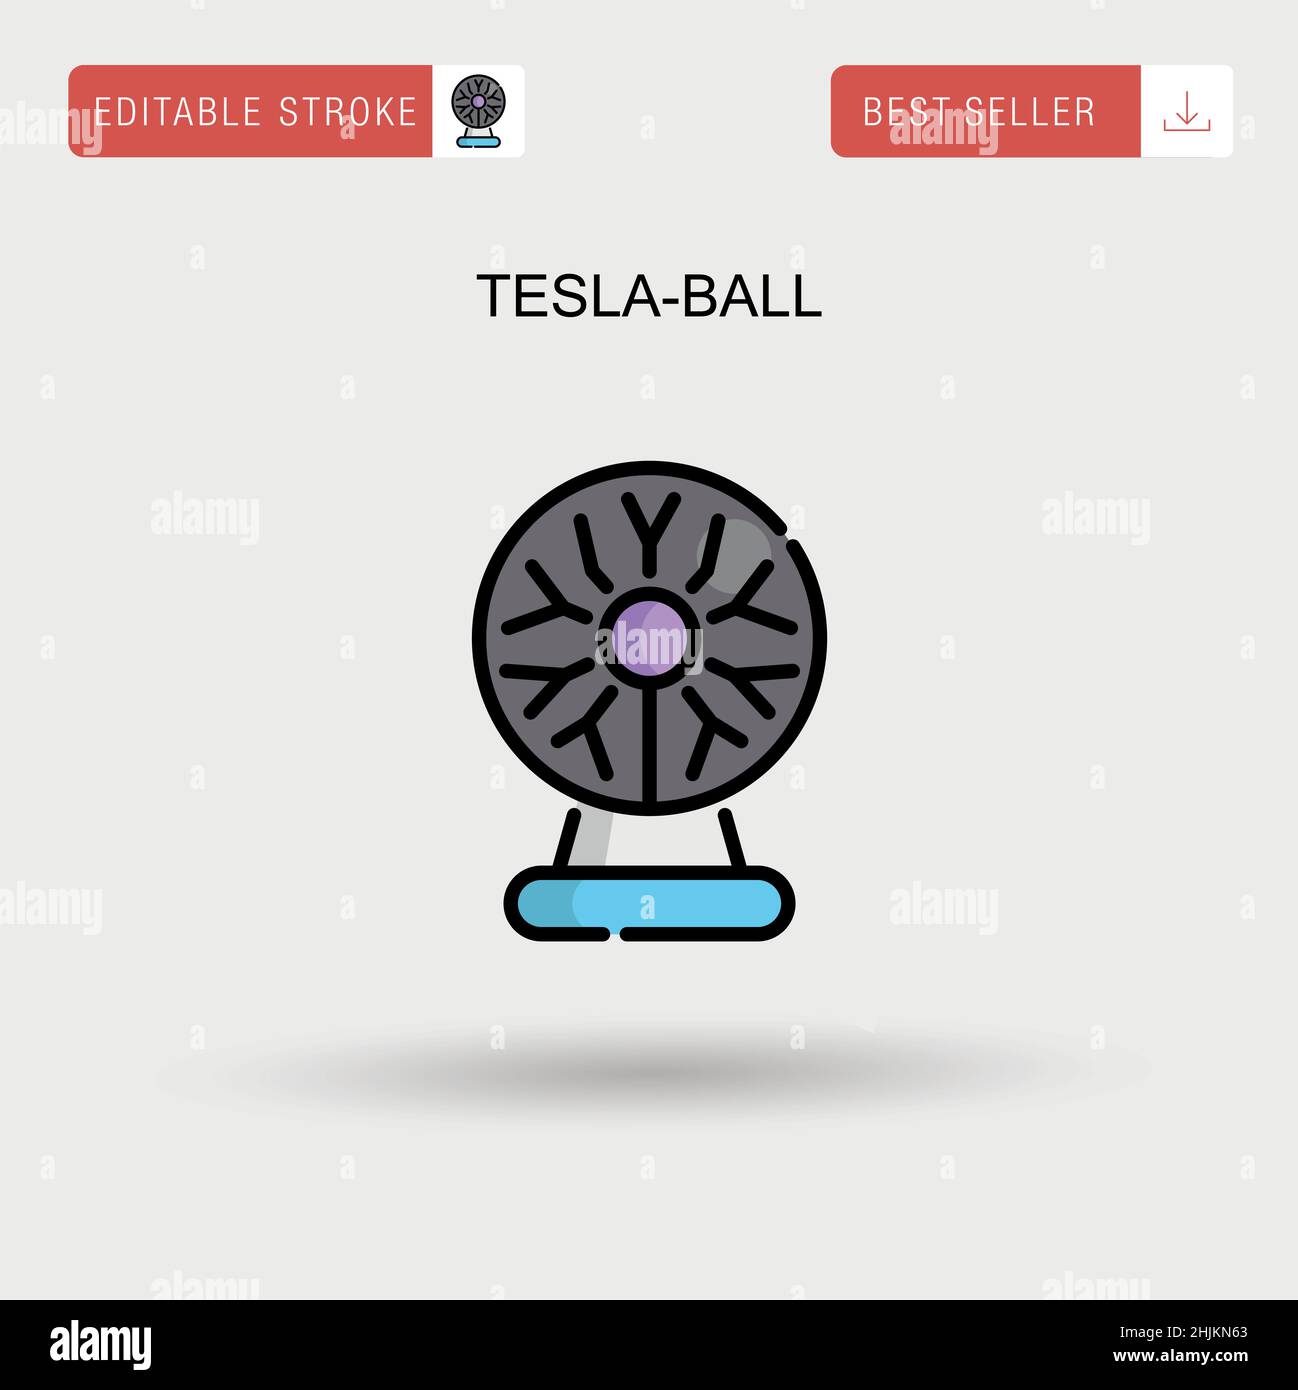 Tesla-ball Simple vector icon. Stock Vector